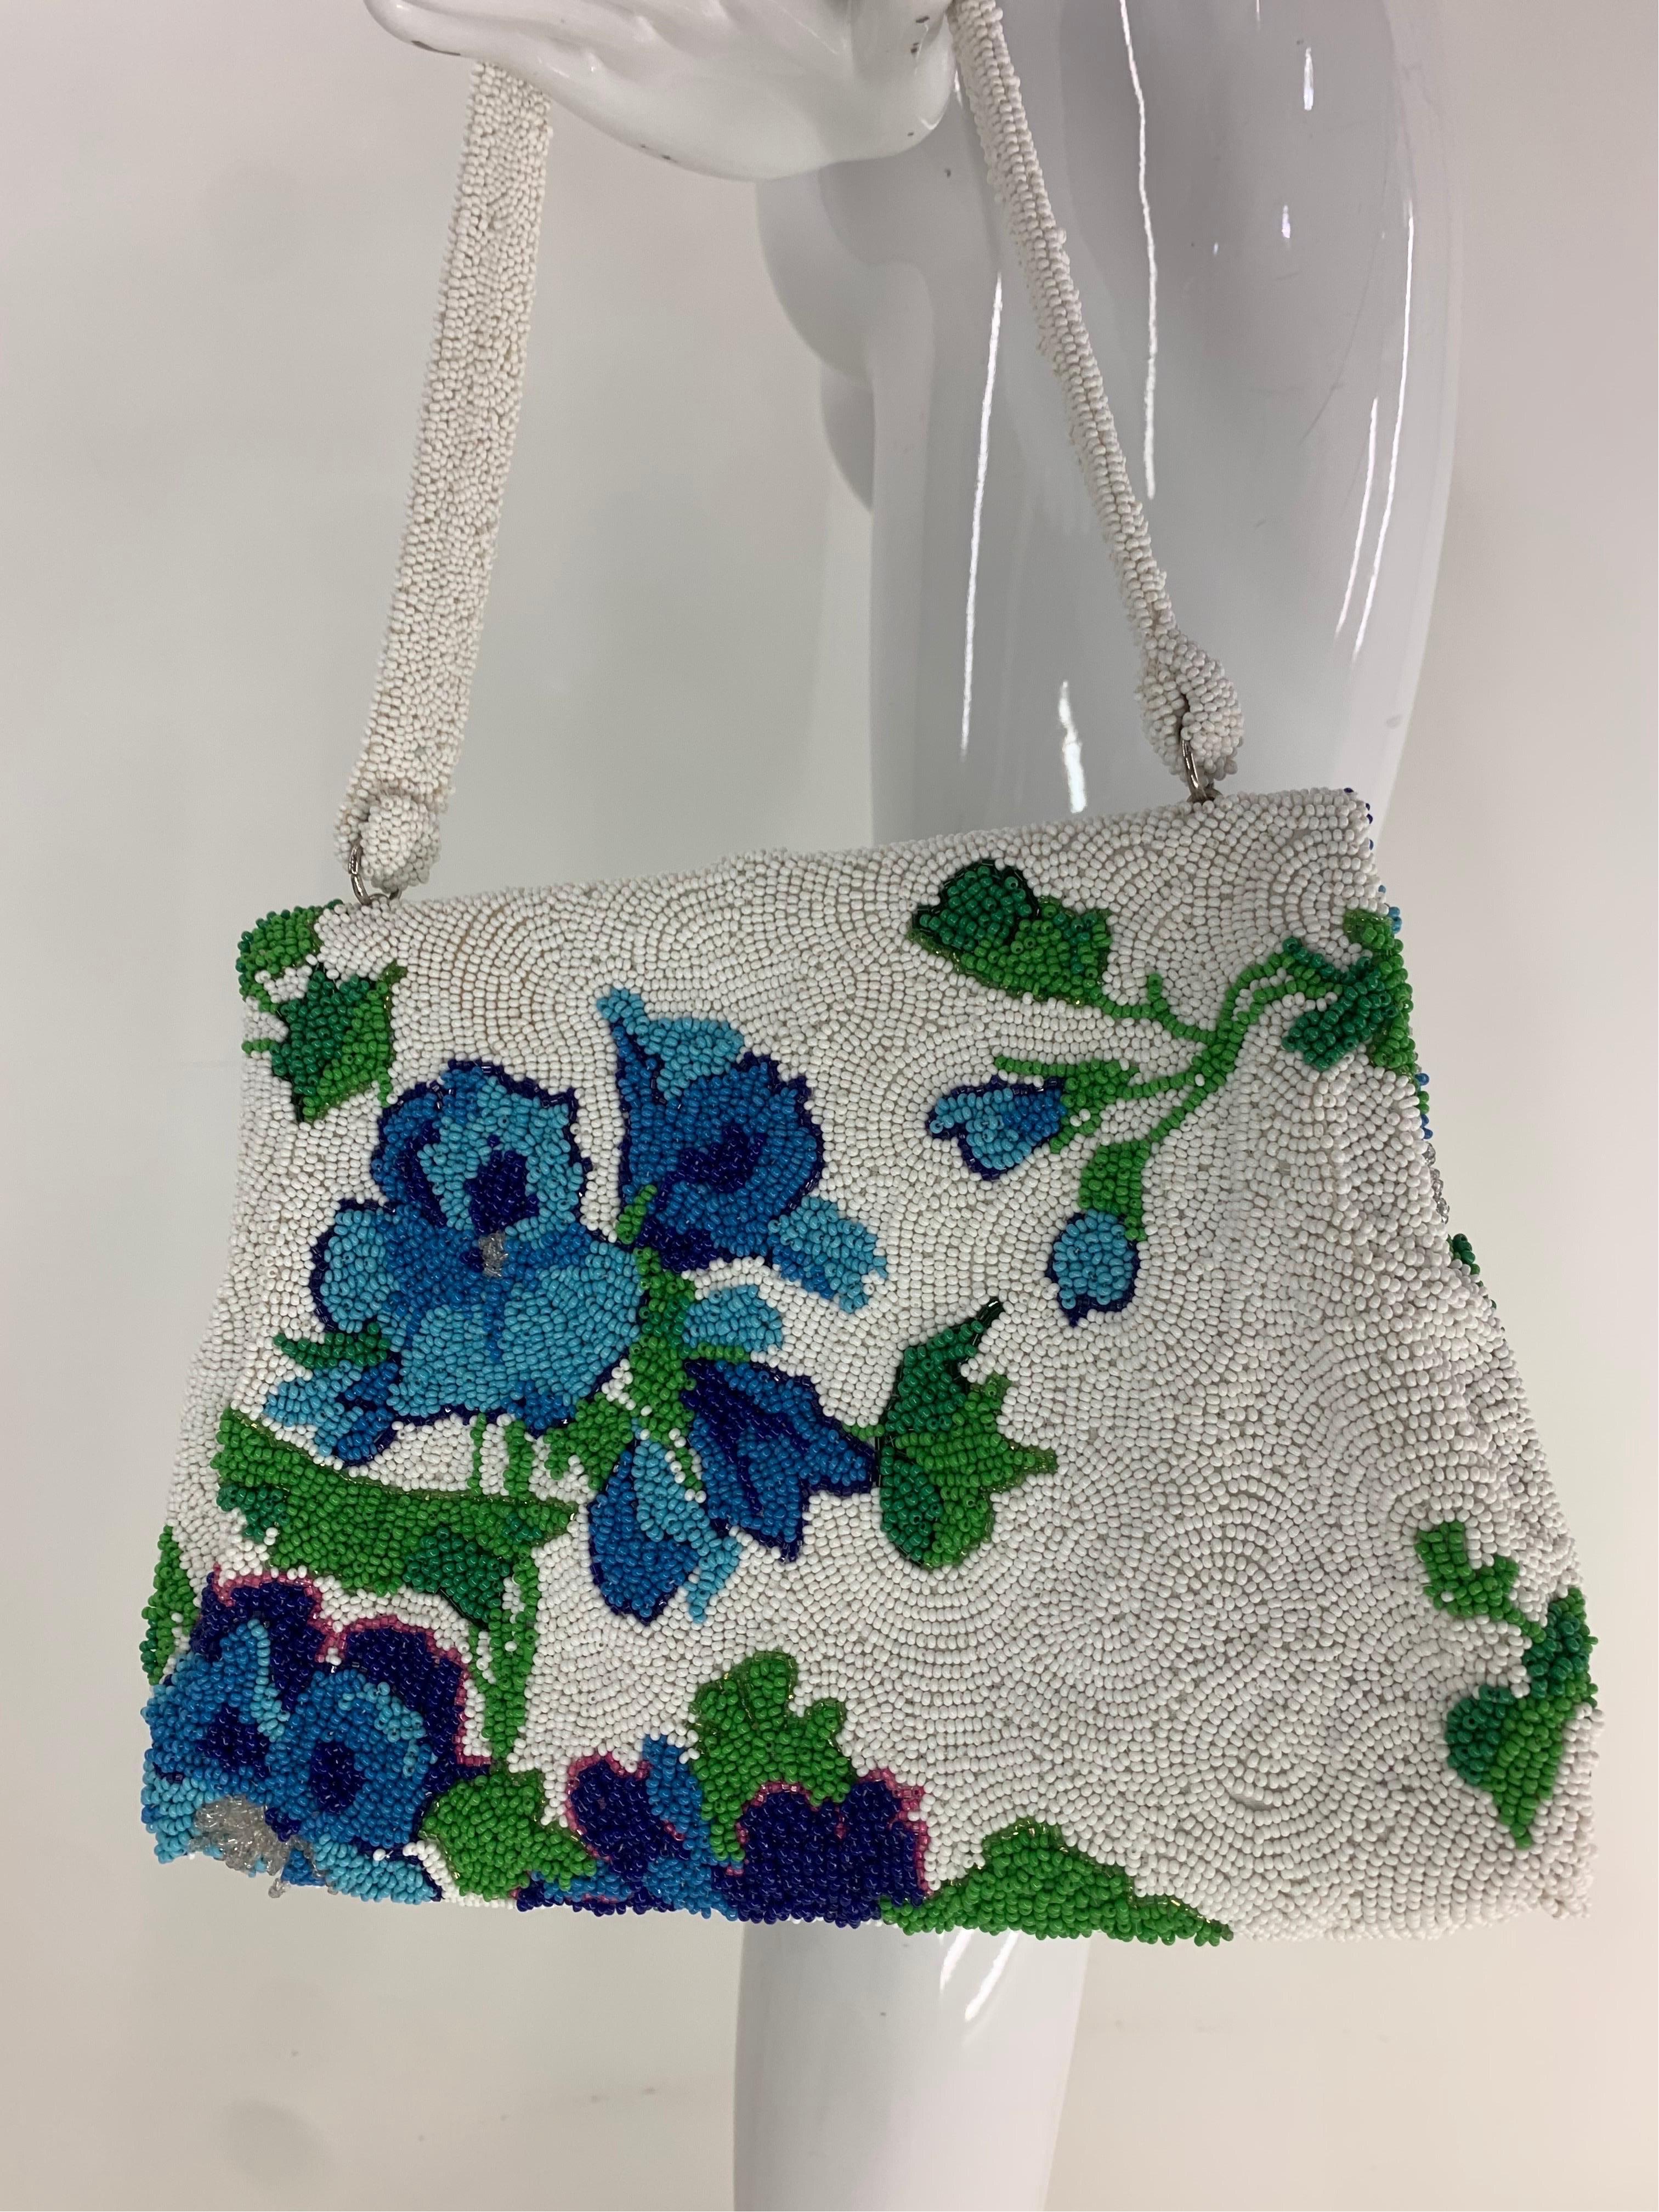 1950 Koret Tresor Stunning Floral Beaded Handbag In Green & Blue On White Ground For Sale 1